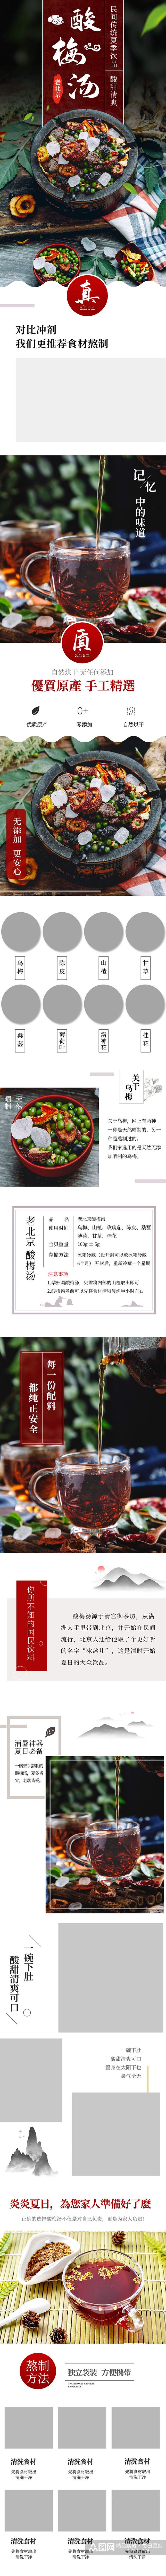 中国风酸梅汤原料包详情页描述素材